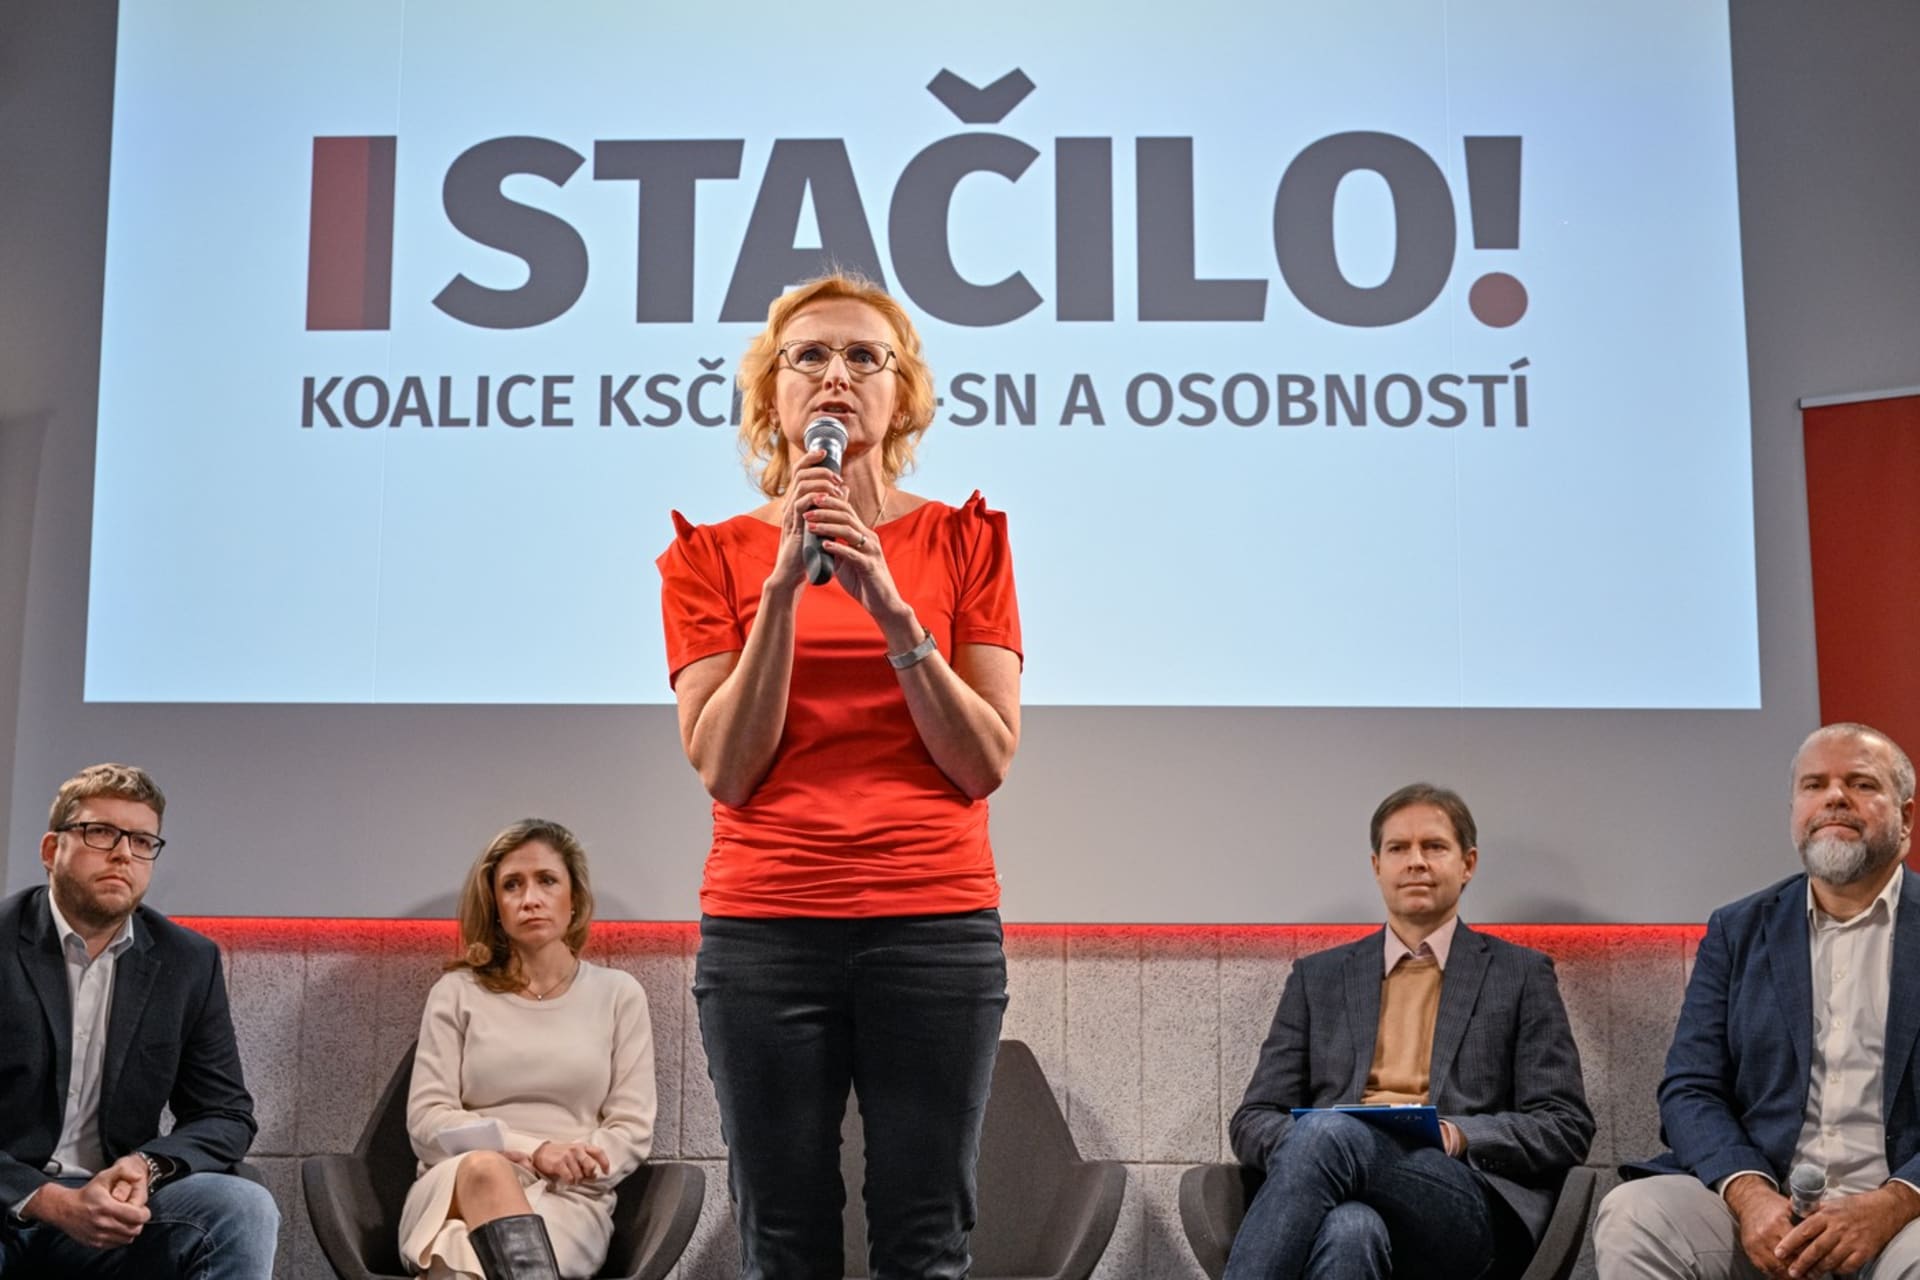 Stačilo! vede do Evropských voleb europoslankyně Kateřina Konečná (KSČM).